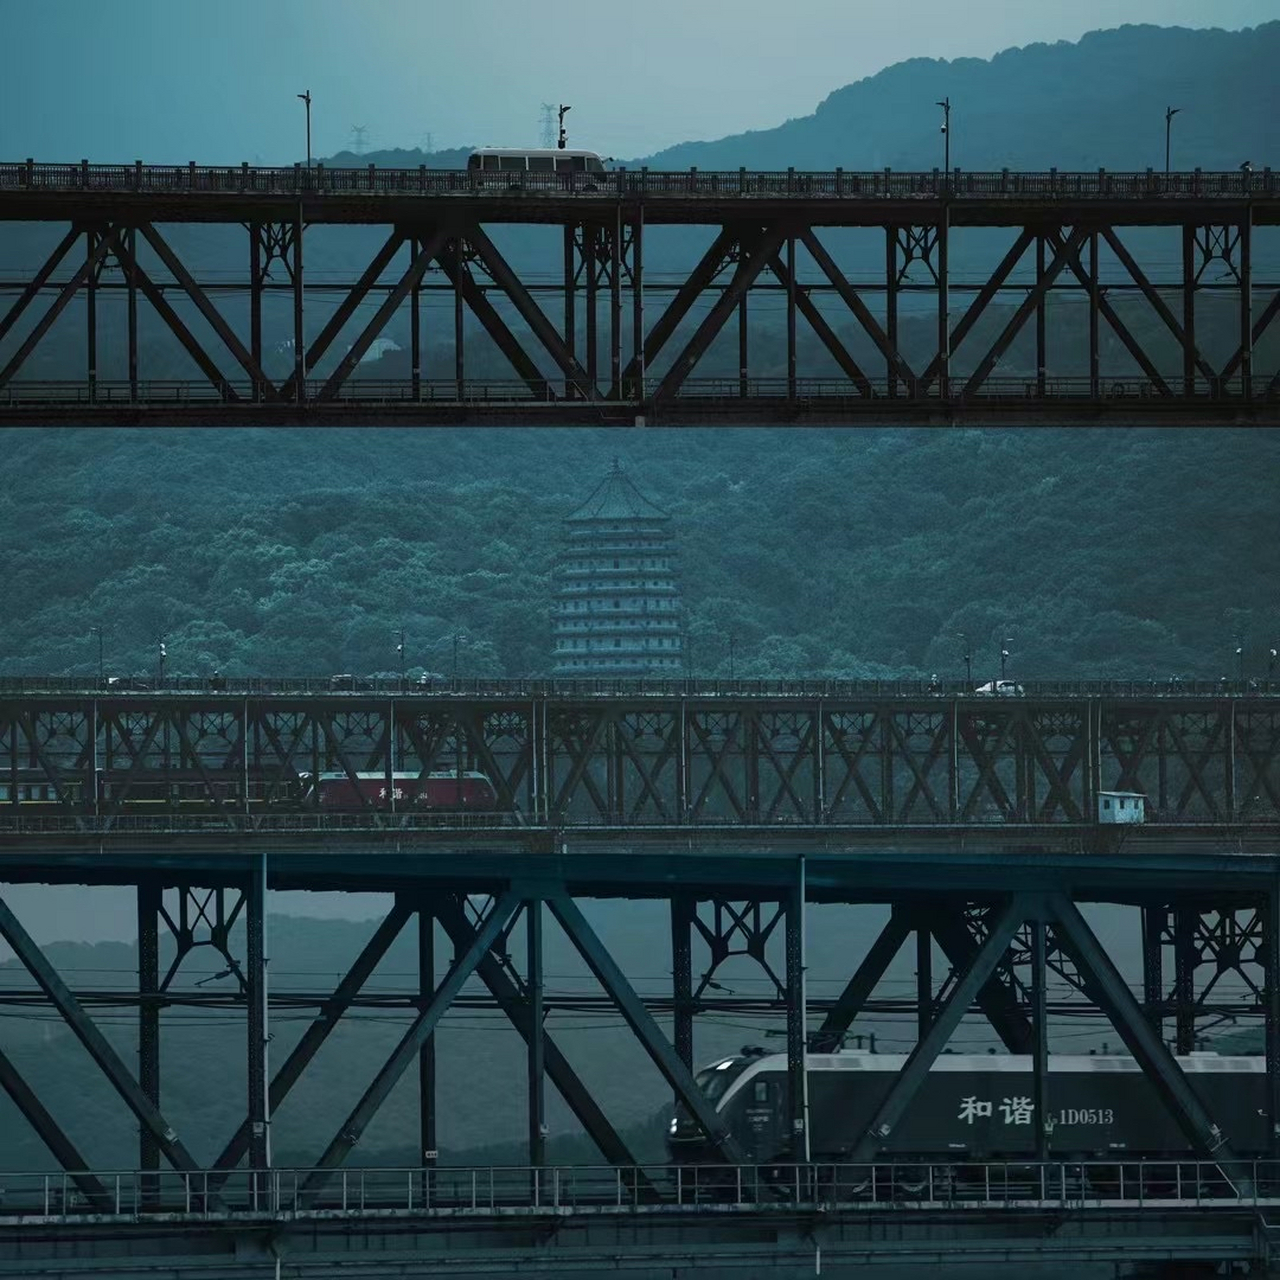 钱塘江大桥也被称为钱塘江一桥,由我国著名桥梁设计大师茅以升先生